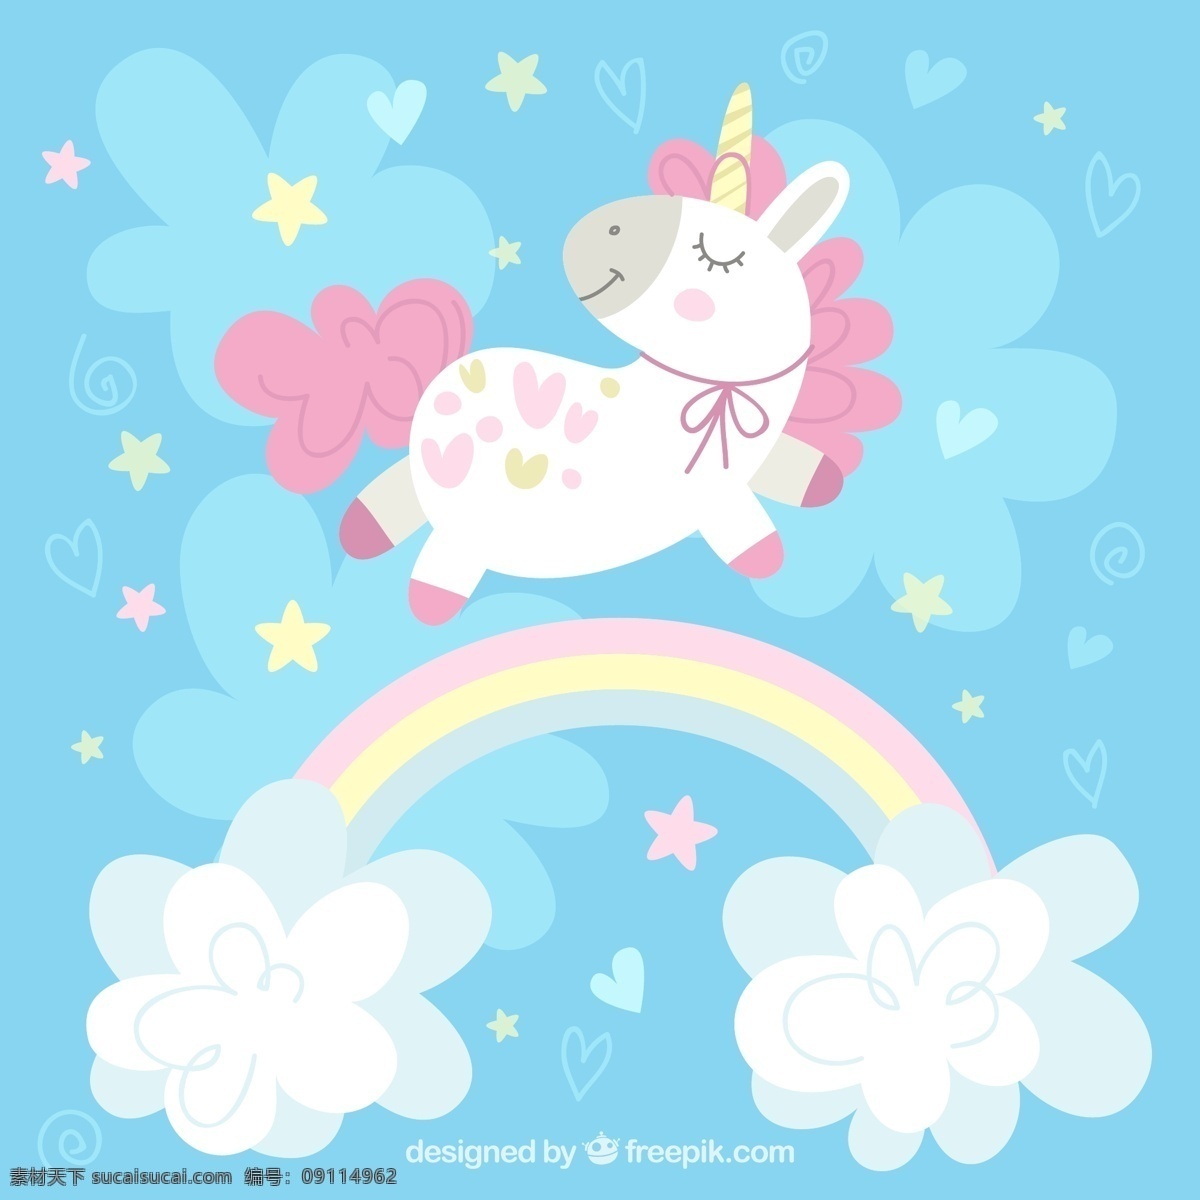 彩虹 上 粉色 独角兽 矢量 爱心 星星 云朵 魔法 童话 文化艺术 绘画书法